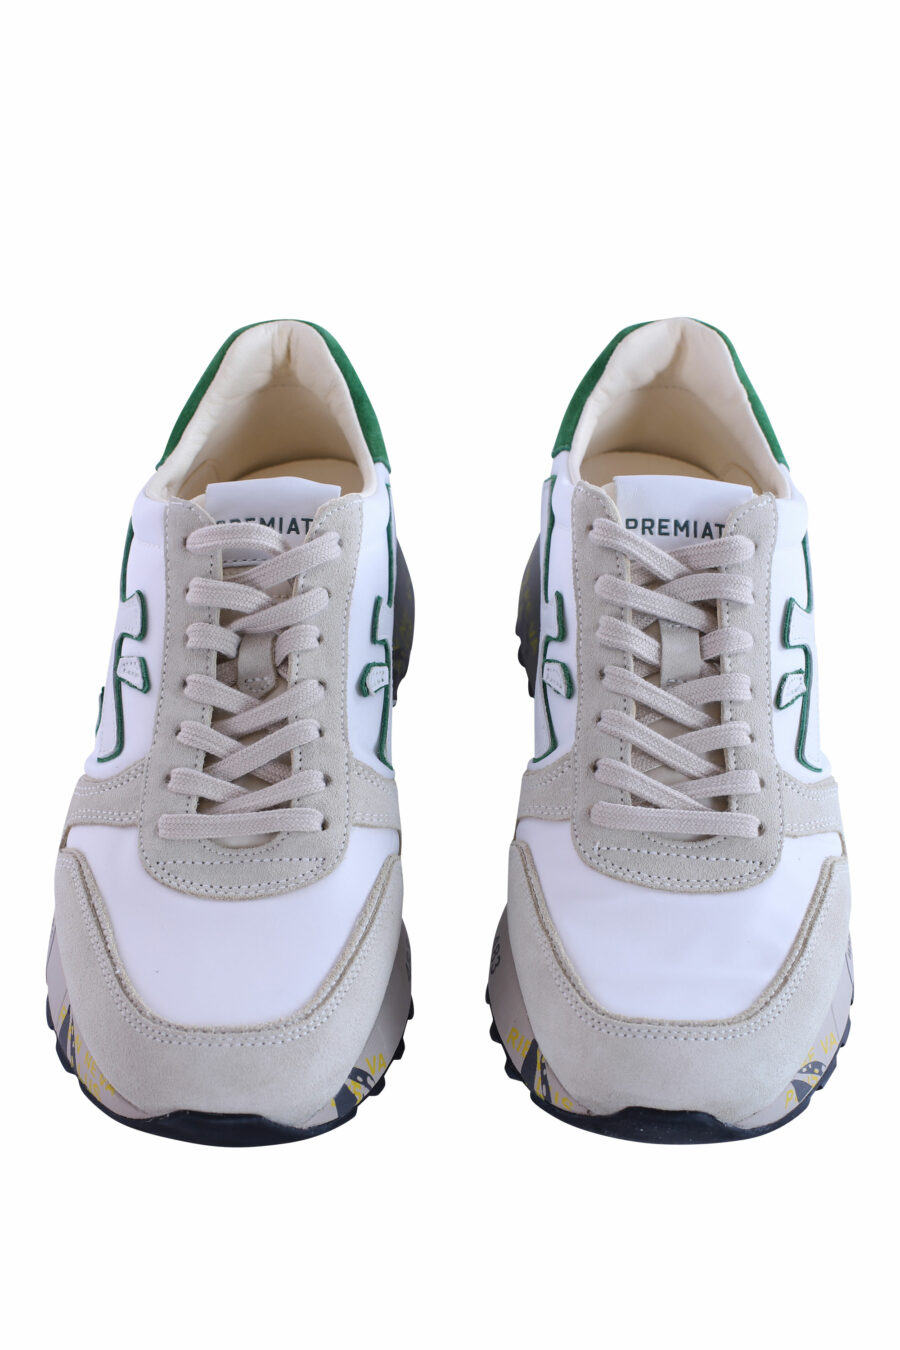 Zapatillas beige con blanco y verde "mick 6167" - IMG 2957